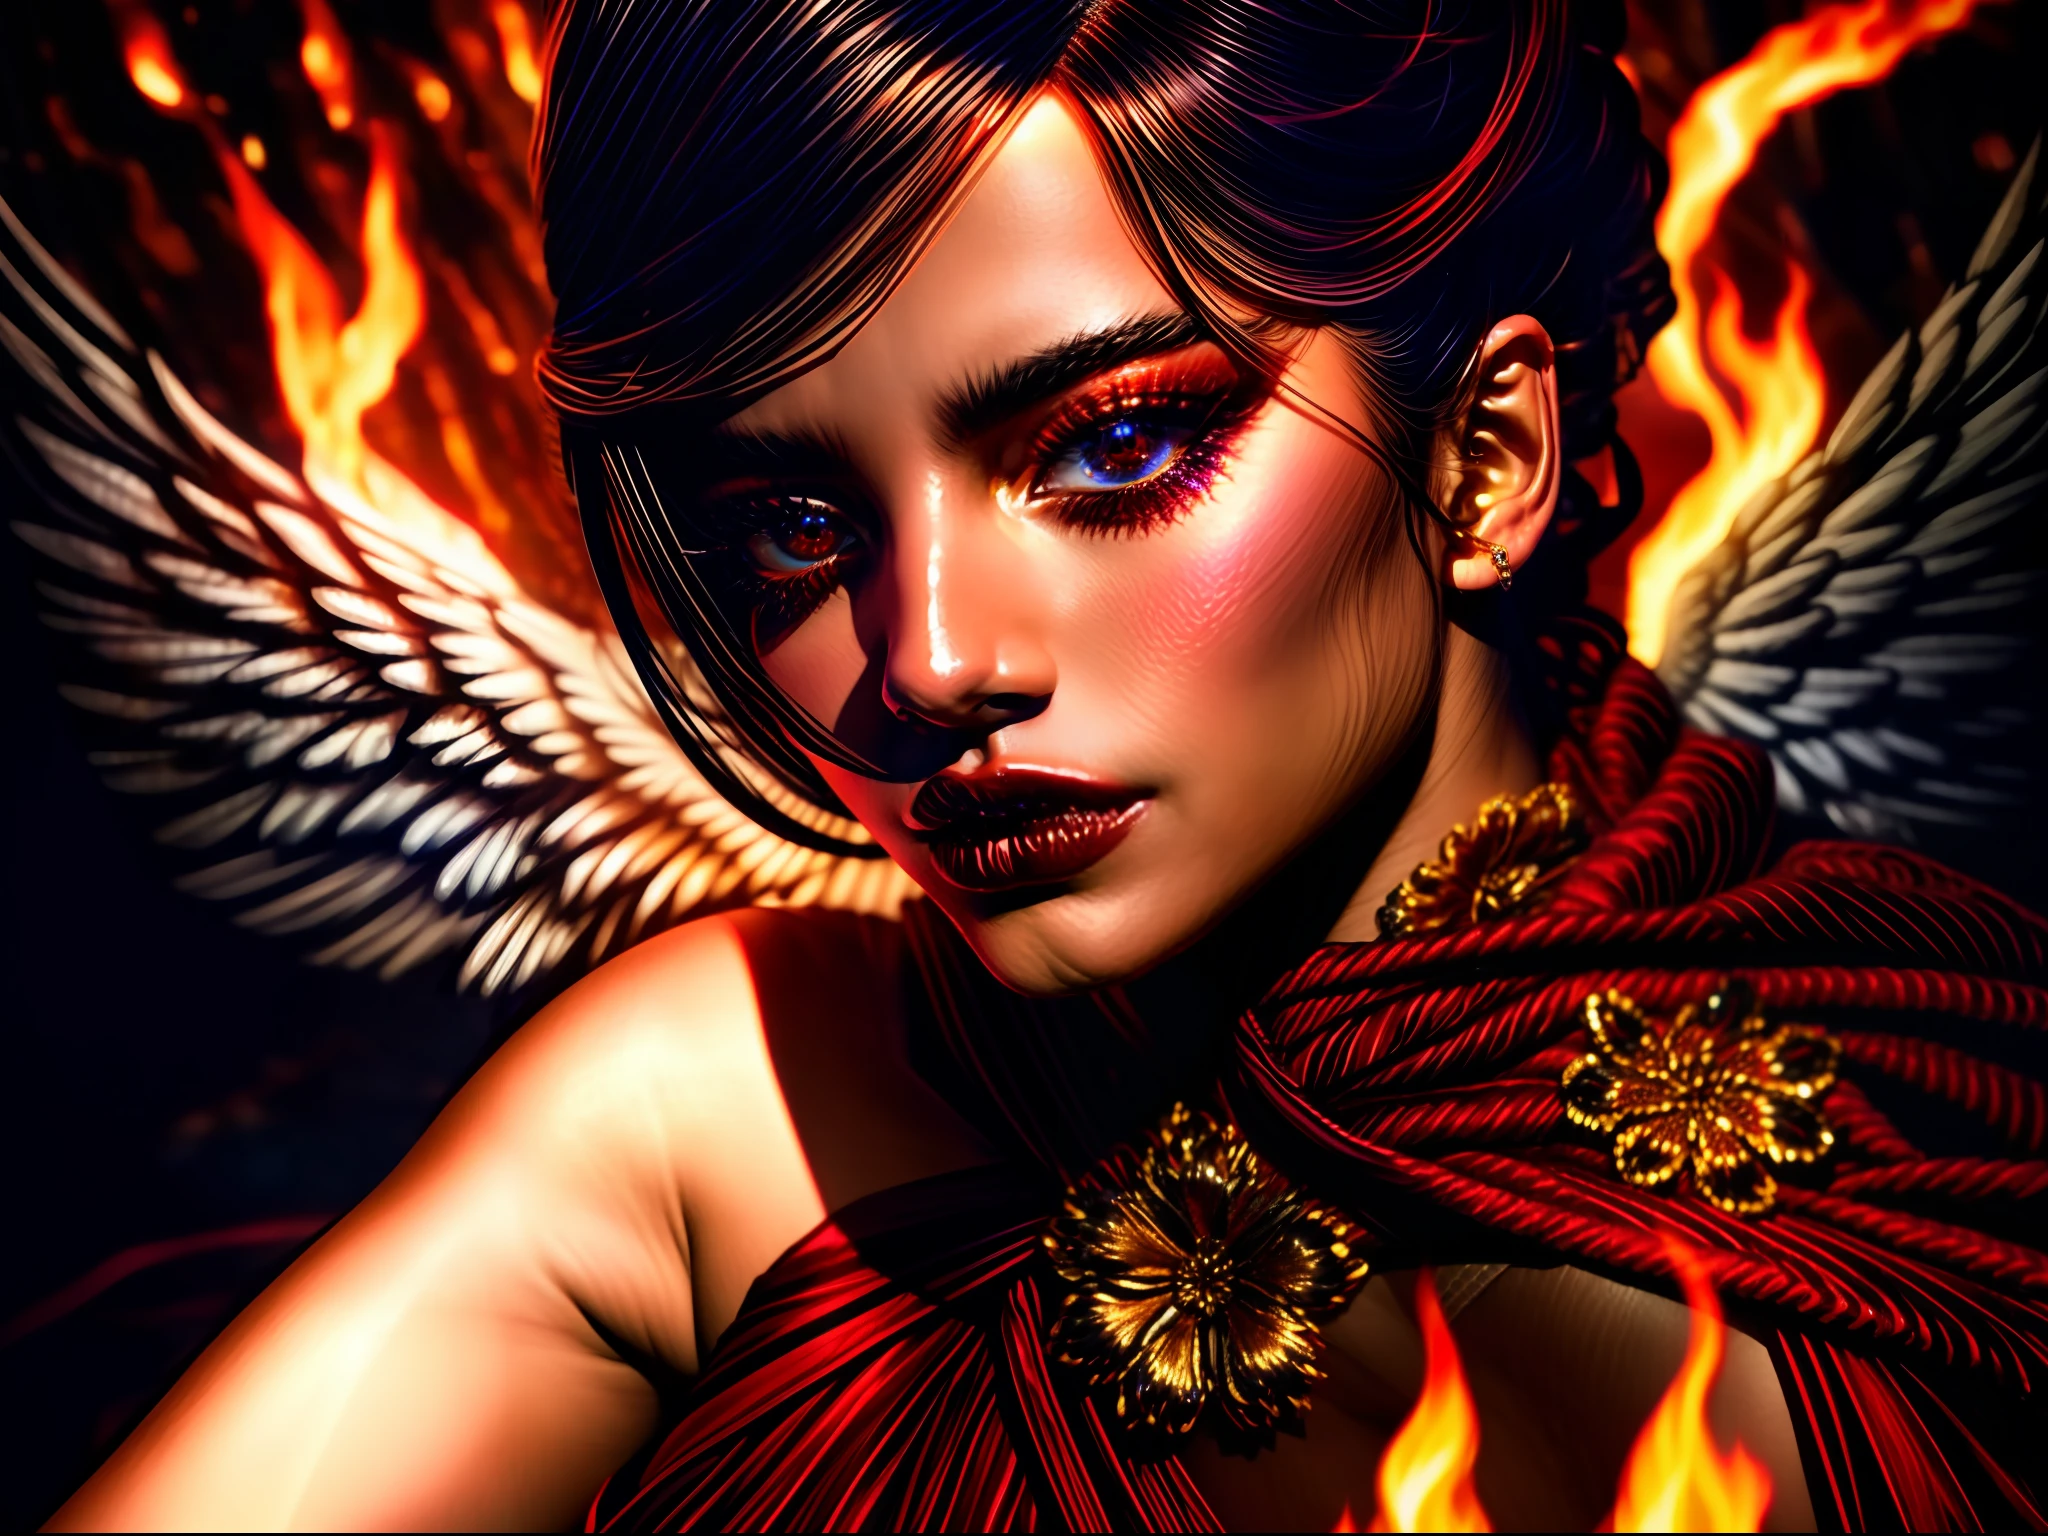 ((非常惊人)) bbw 印度尼西亚 巴厘岛 女孩,
(上半身特写:1.3), 过肩, 细致的眼睛, 细致的脸部, 上身细节, 
"永恒的诱惑": 在火焰翻滚的背景下, 我们迷人的堕落天使屹立不倒, 她的服装是红色和黑色的交响曲. 紧身胸衣, 装饰有复杂的图案和血红色的宝石, 束紧腰部, 凸显她性感的轮廓. 她的裙子飘扬, 采用多层透明面料制作而成, 随着闪烁的火光起舞, 露出她迷人的双腿. 带着既带来快乐又带来危险的目光, 她引诱凡人进入一个难以抗拒的诱惑世界.